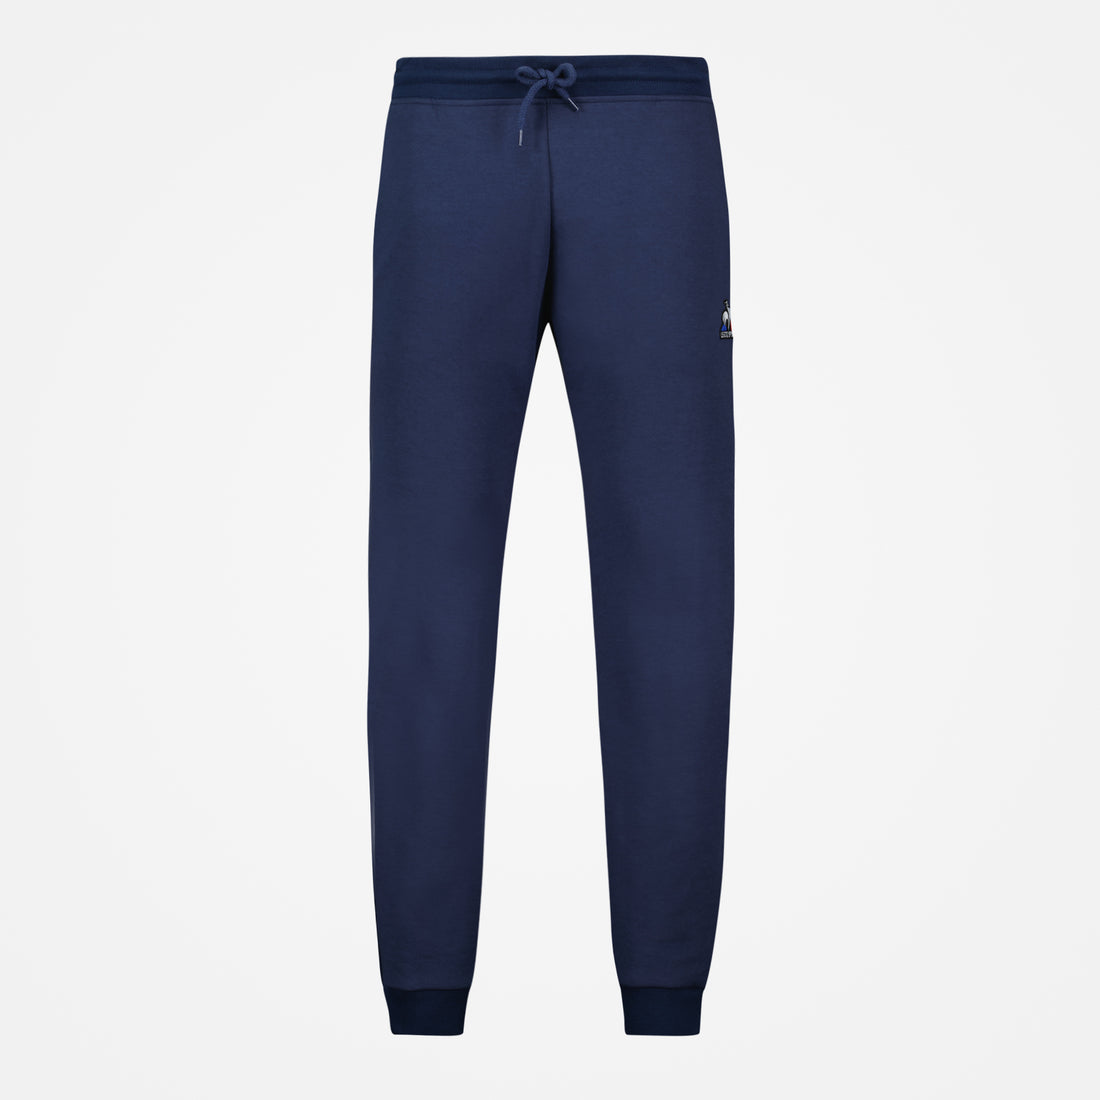 2310500-ESS Pant Slim N°1 M dress blues  | Trousers Slim for men